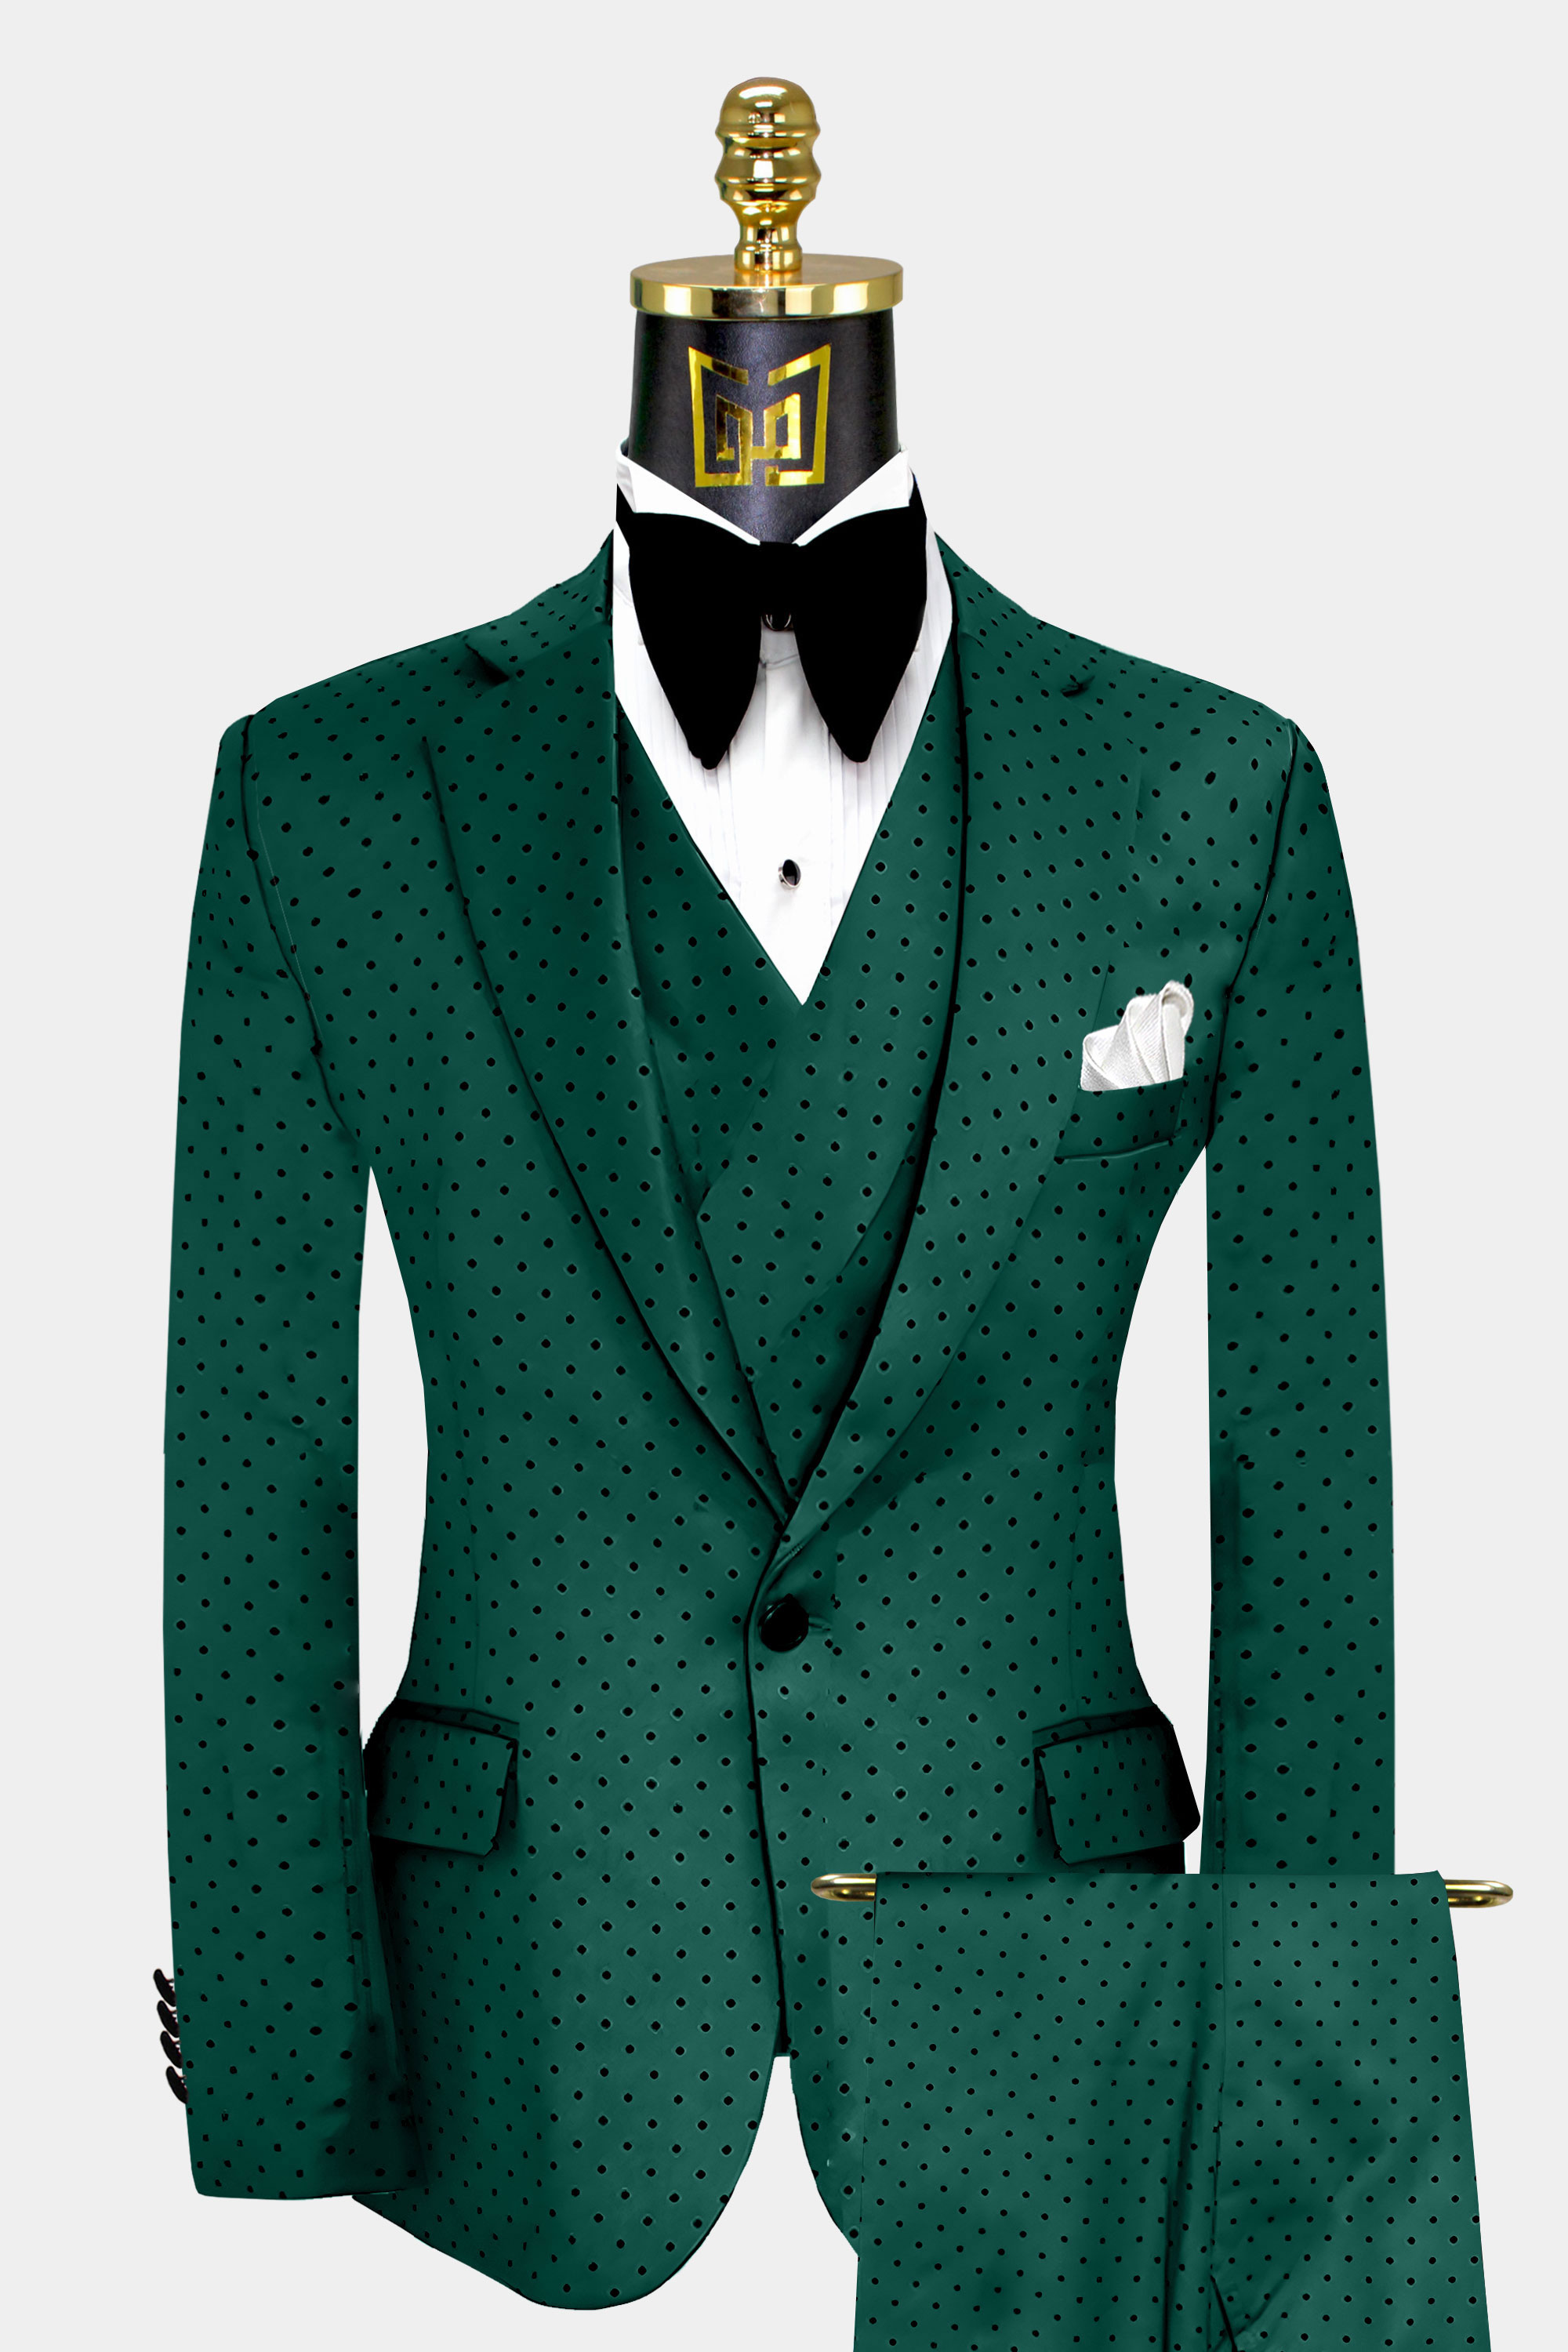 Mens-Emerald-Green-Polka-Dot-Suit-Wedding-Groom-Tuxedo-from-Gentlemansguru.com